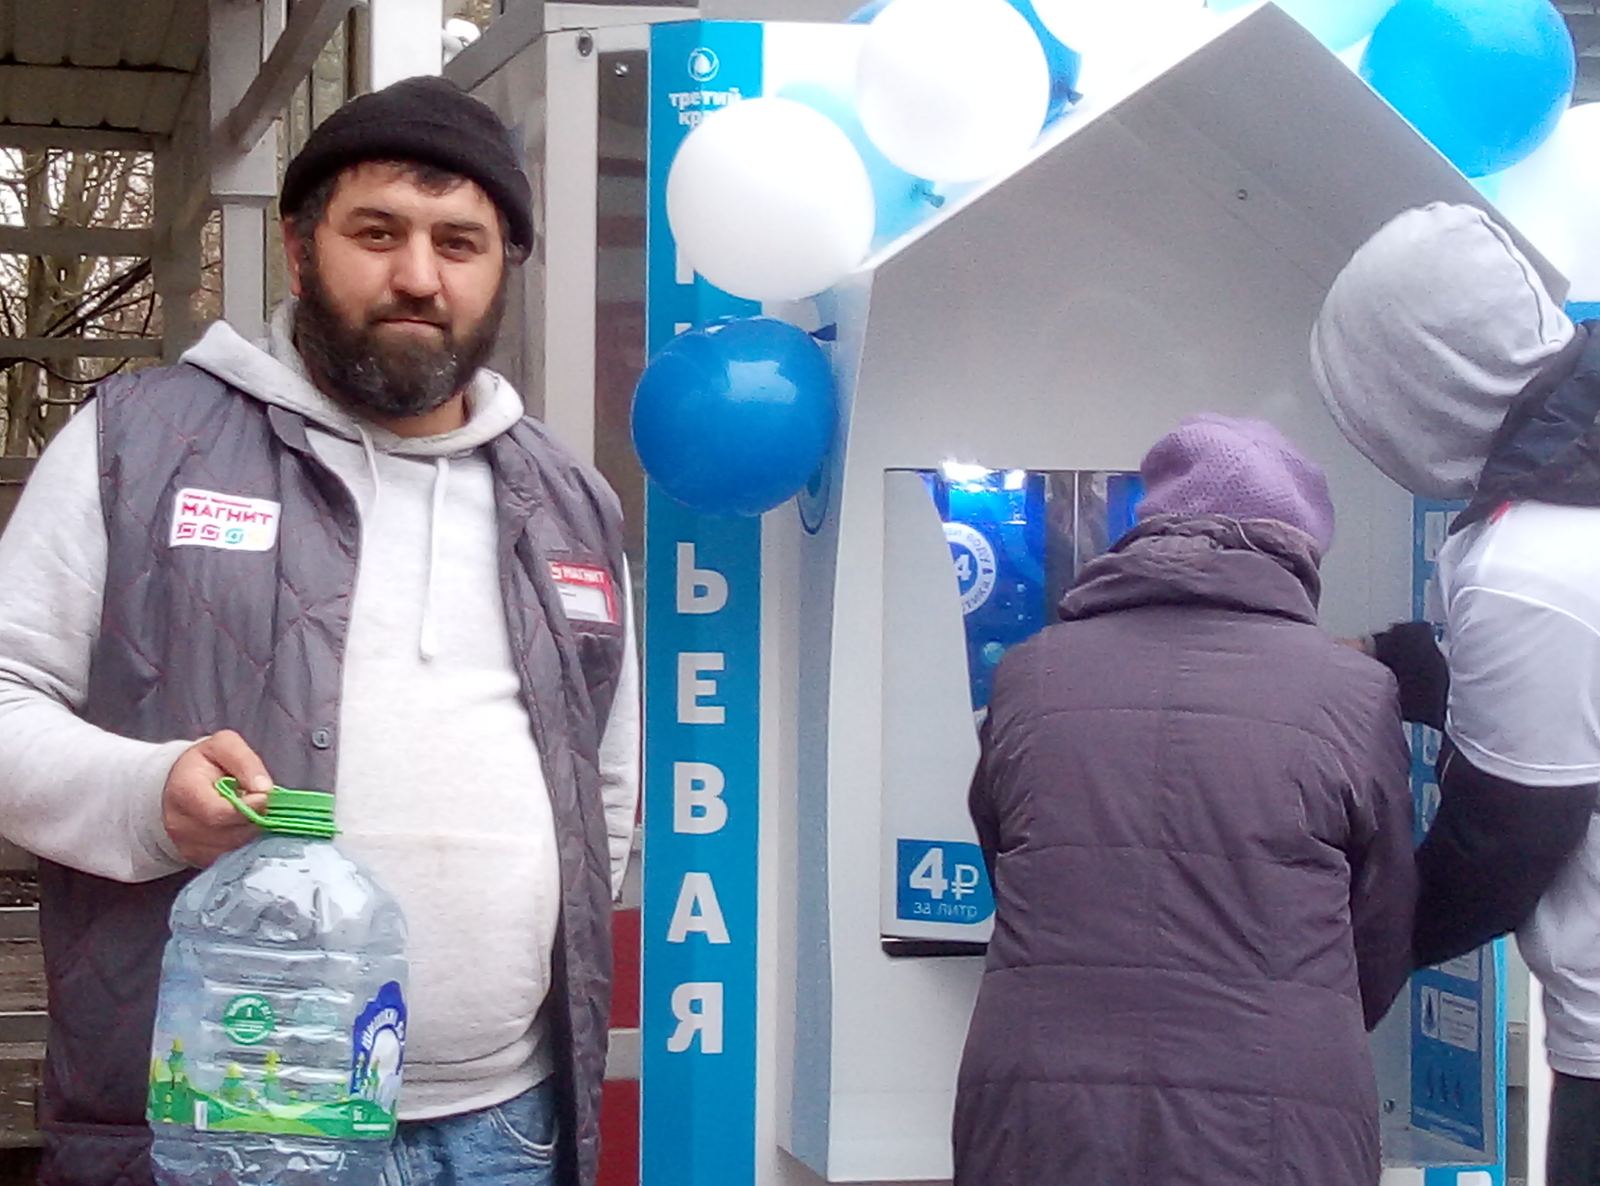 Дегустация питьевой воды из автоматов компании “Третий кран” прошла в Санкт-Петербурге